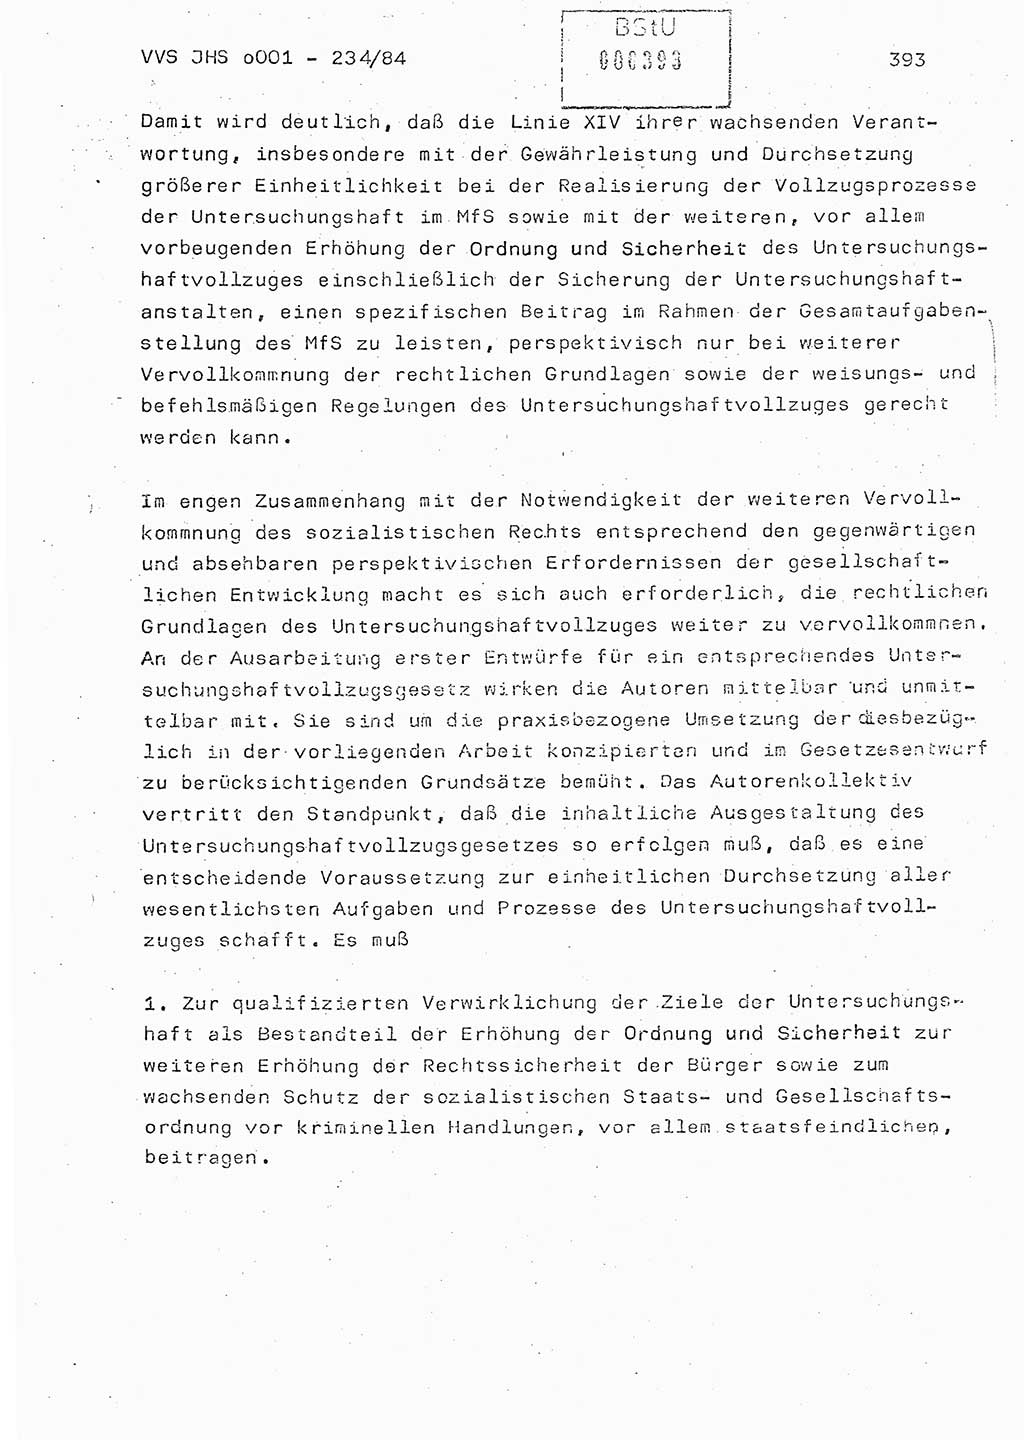 Dissertation Oberst Siegfried Rataizick (Abt. ⅩⅣ), Oberstleutnant Volkmar Heinz (Abt. ⅩⅣ), Oberstleutnant Werner Stein (HA Ⅸ), Hauptmann Heinz Conrad (JHS), Ministerium für Staatssicherheit (MfS) [Deutsche Demokratische Republik (DDR)], Juristische Hochschule (JHS), Vertrauliche Verschlußsache (VVS) o001-234/84, Potsdam 1984, Seite 393 (Diss. MfS DDR JHS VVS o001-234/84 1984, S. 393)